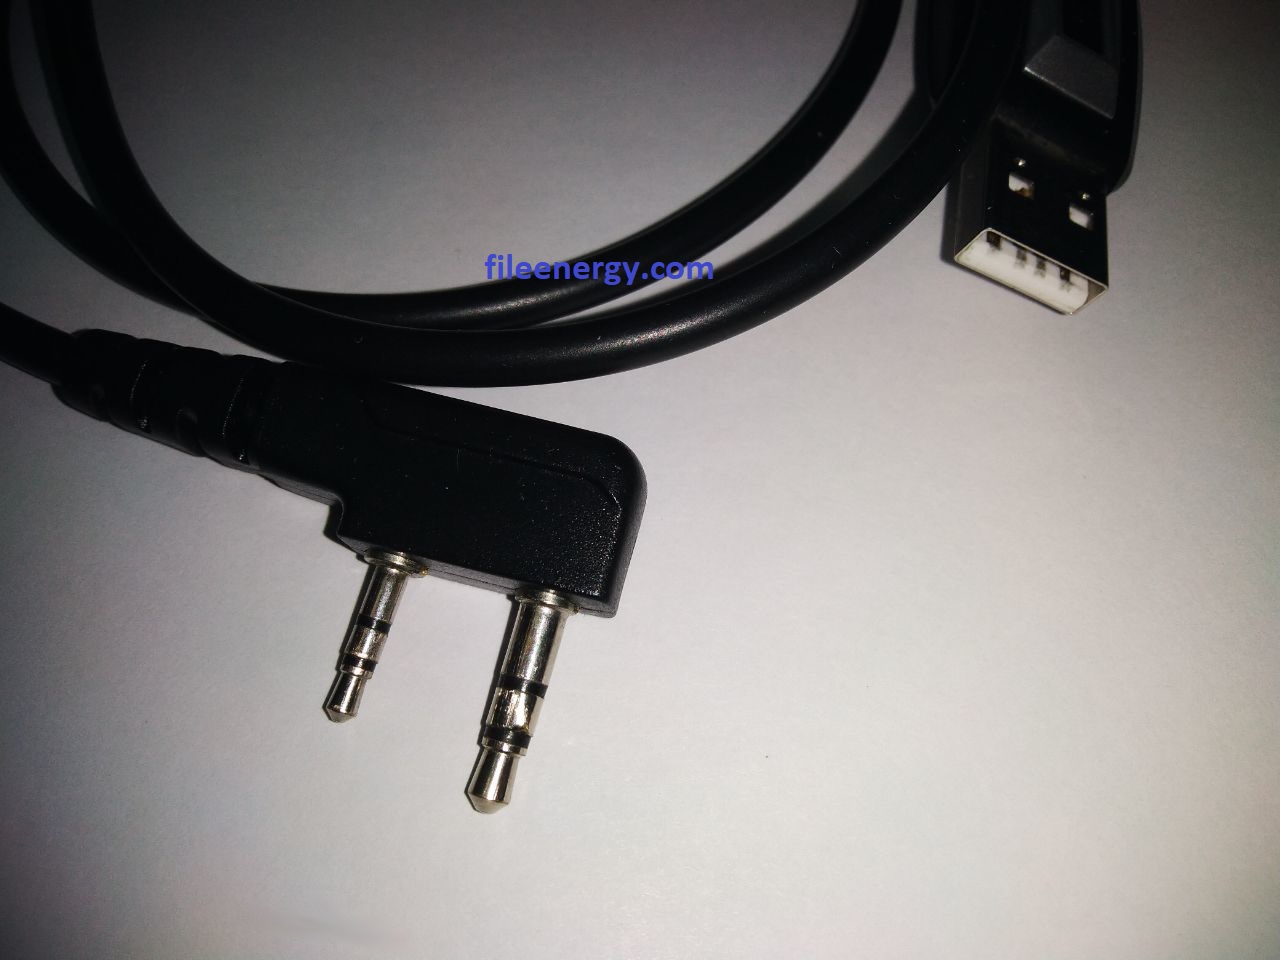 Кабель USB для прошивки и программирования рации Retevis